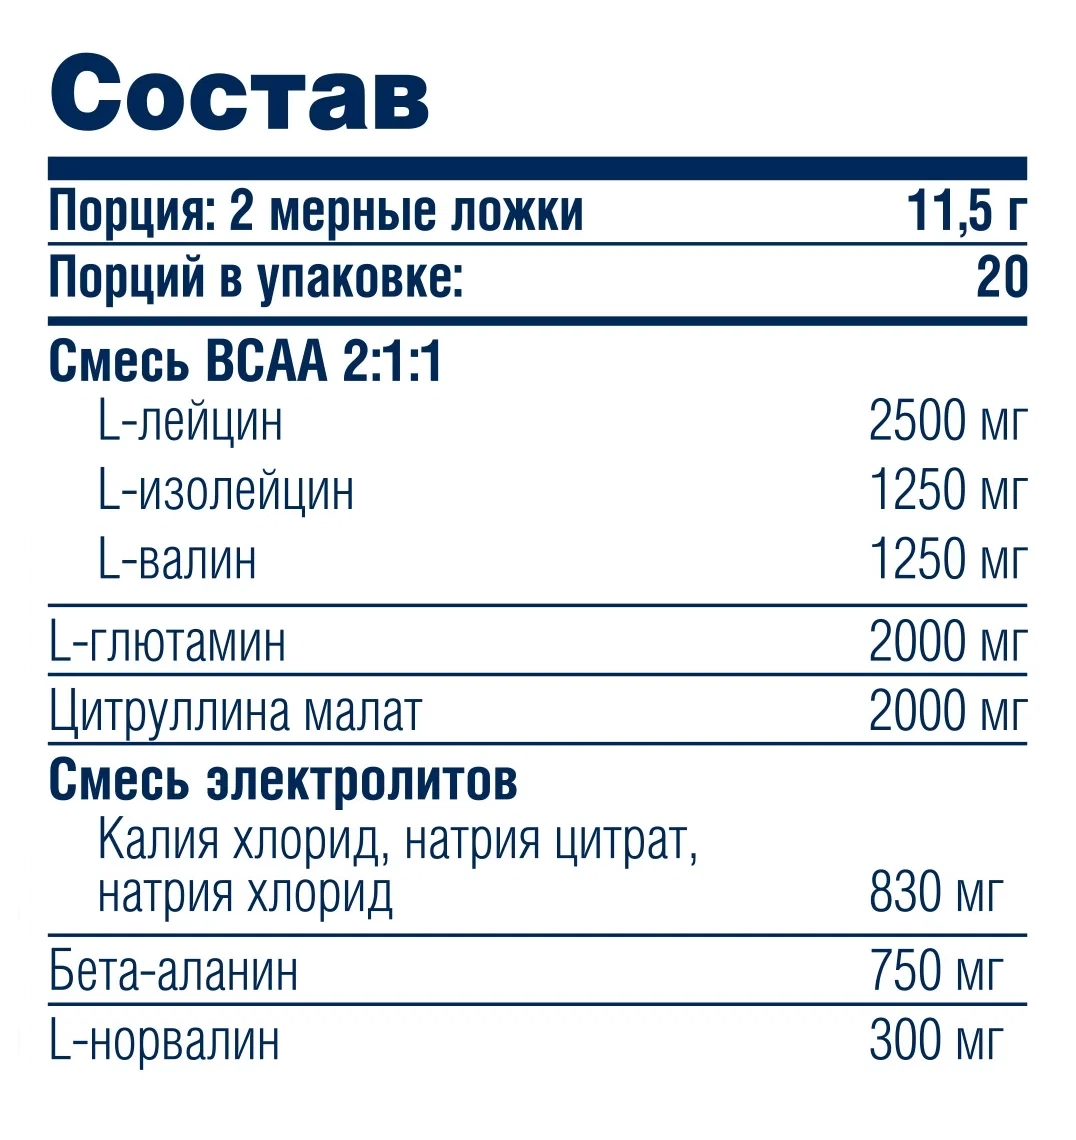 А это состав добавки с BCAA. В одной порции 2,5 грамма лейцина, по 1,25 грамма валина и изолейцина — чуть меньше, чем в добавке протеина. Источник: market.yandex.ru